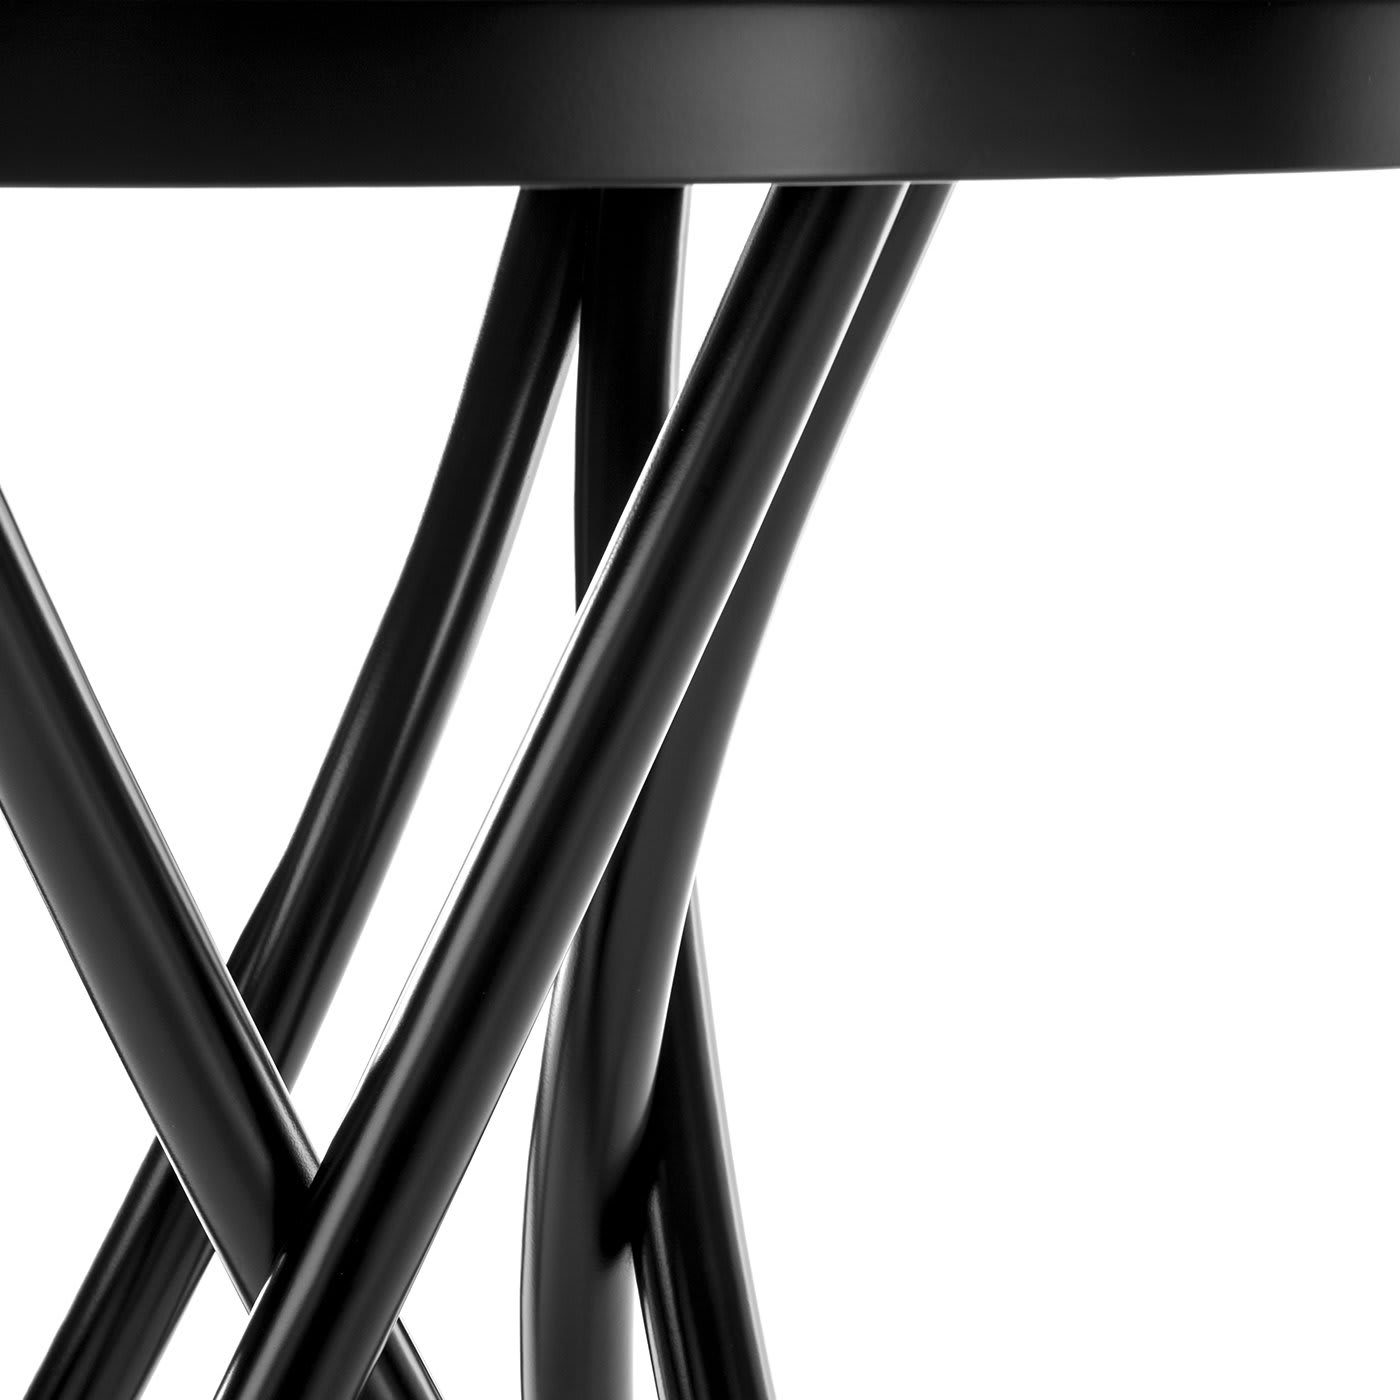 Rehbeintisch Table by Gebrüder Thonet - Gebrüder Thonet Vienna GmbH (GTV) – Wiener GTV Design